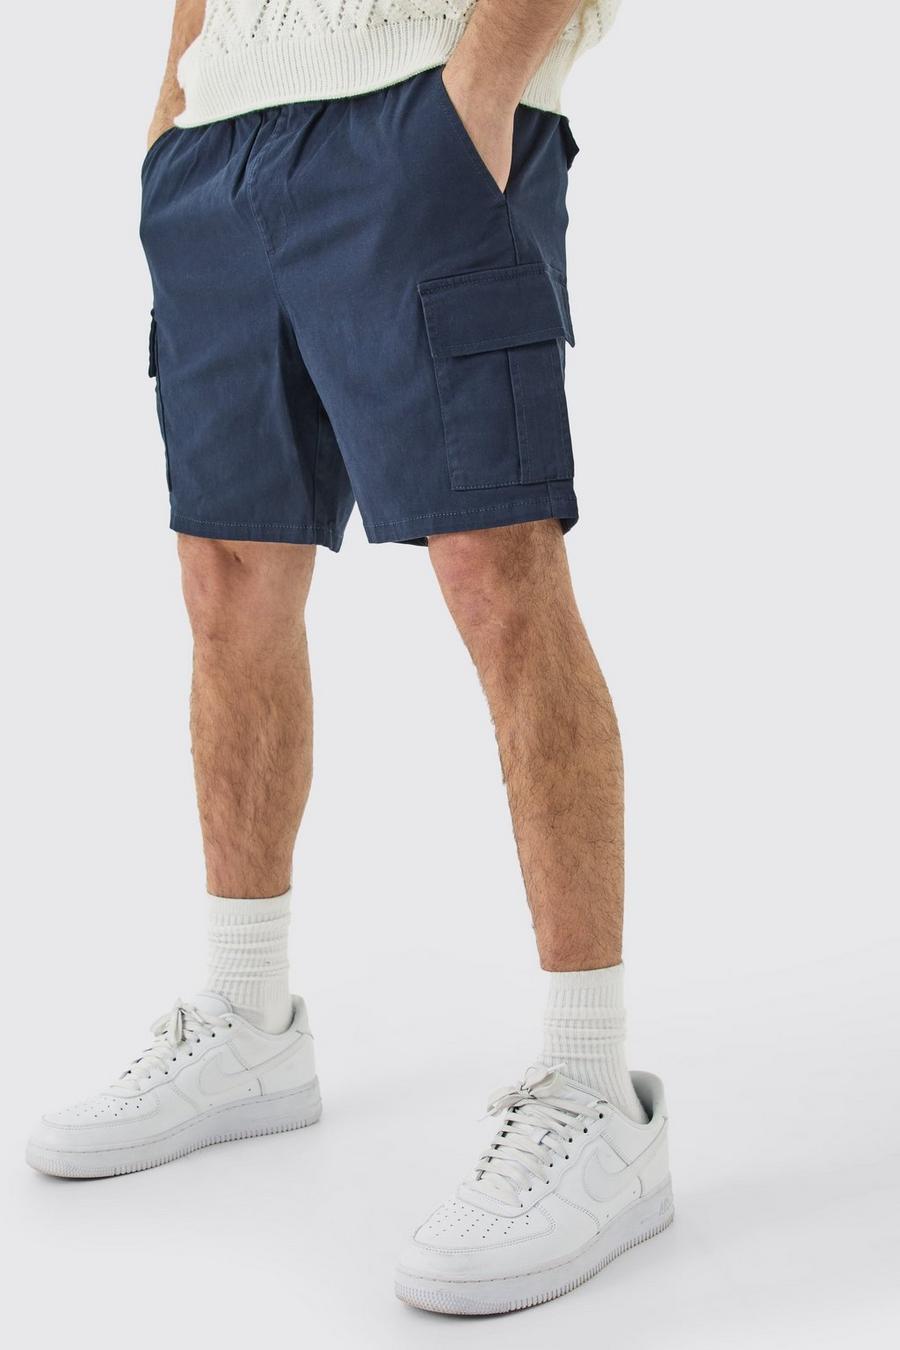 Dunkelblaue Slim-Fit Cargo-Shorts mit elastischem Bund, Navy